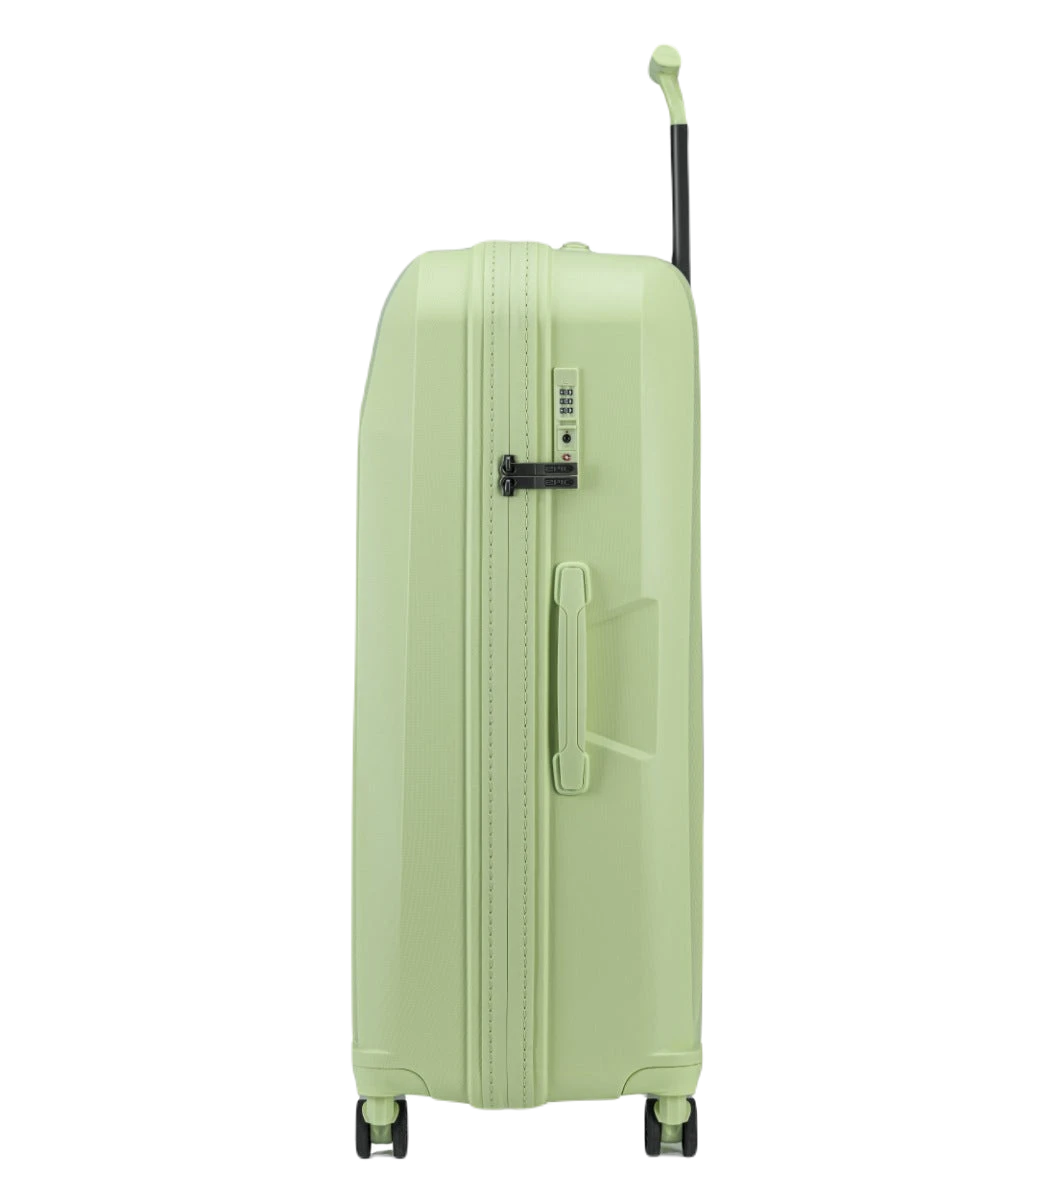 Epic Phantom limegrøn kuffert fra siden